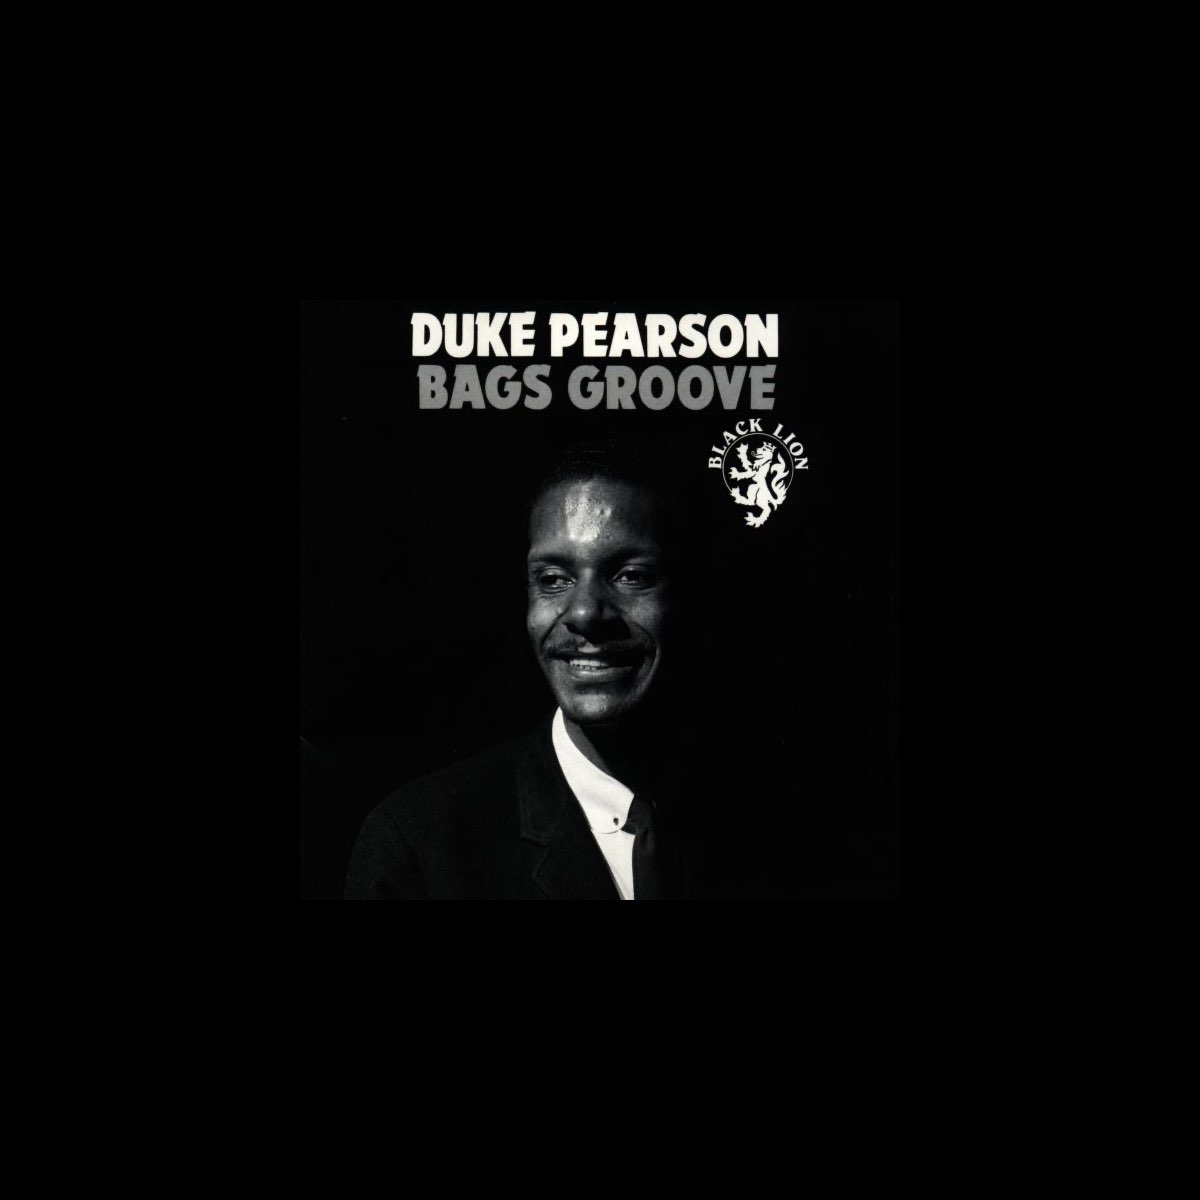 Bags' Groove by Milt Jackson/arr. Mark Taylor - YouTube